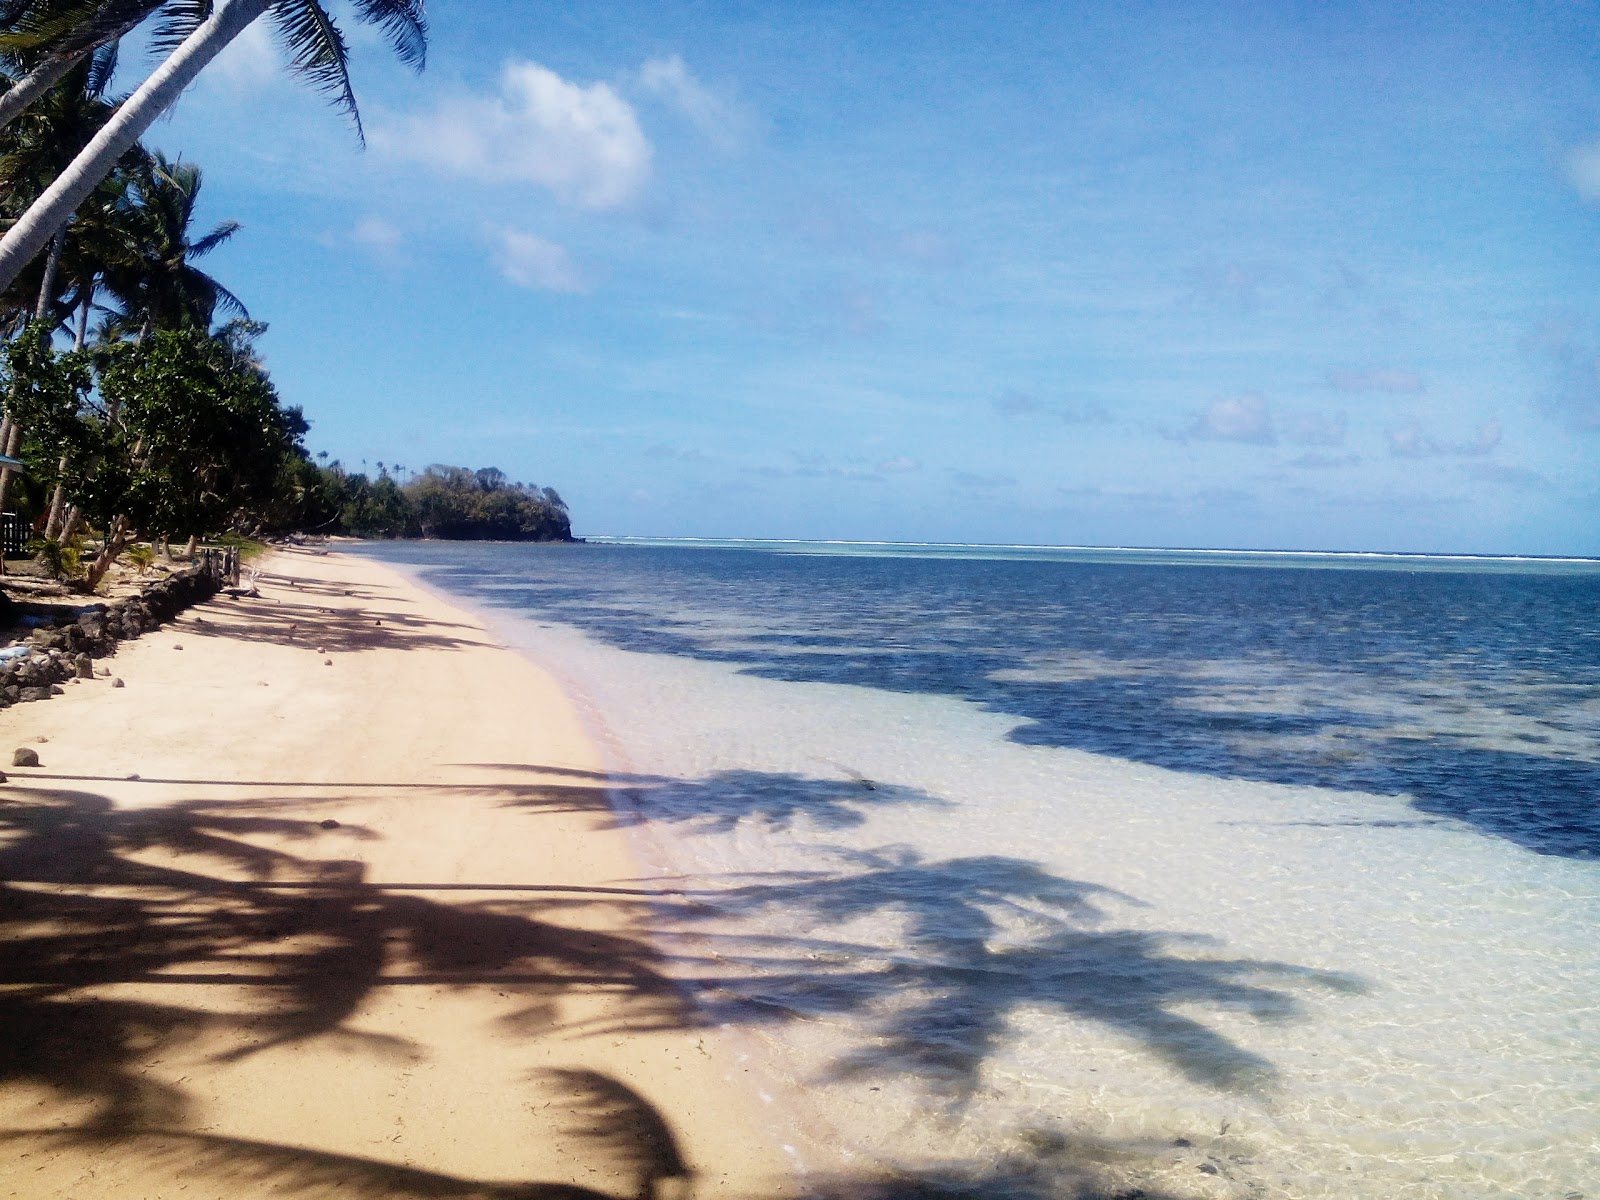 Palau East Beach'in fotoğrafı geniş plaj ile birlikte